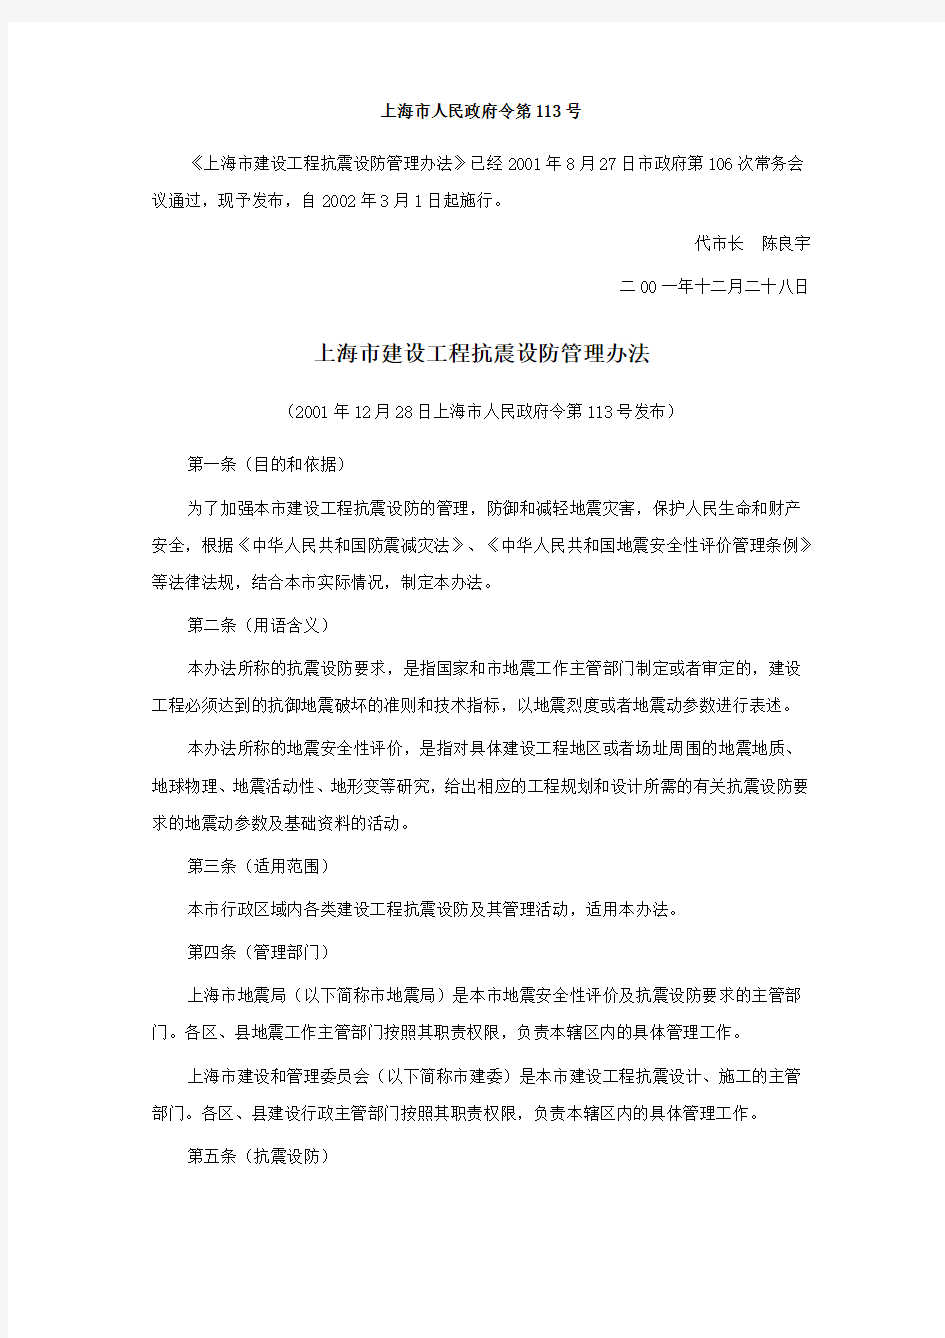 T020502-001上海市建设工程抗震设防管理办法